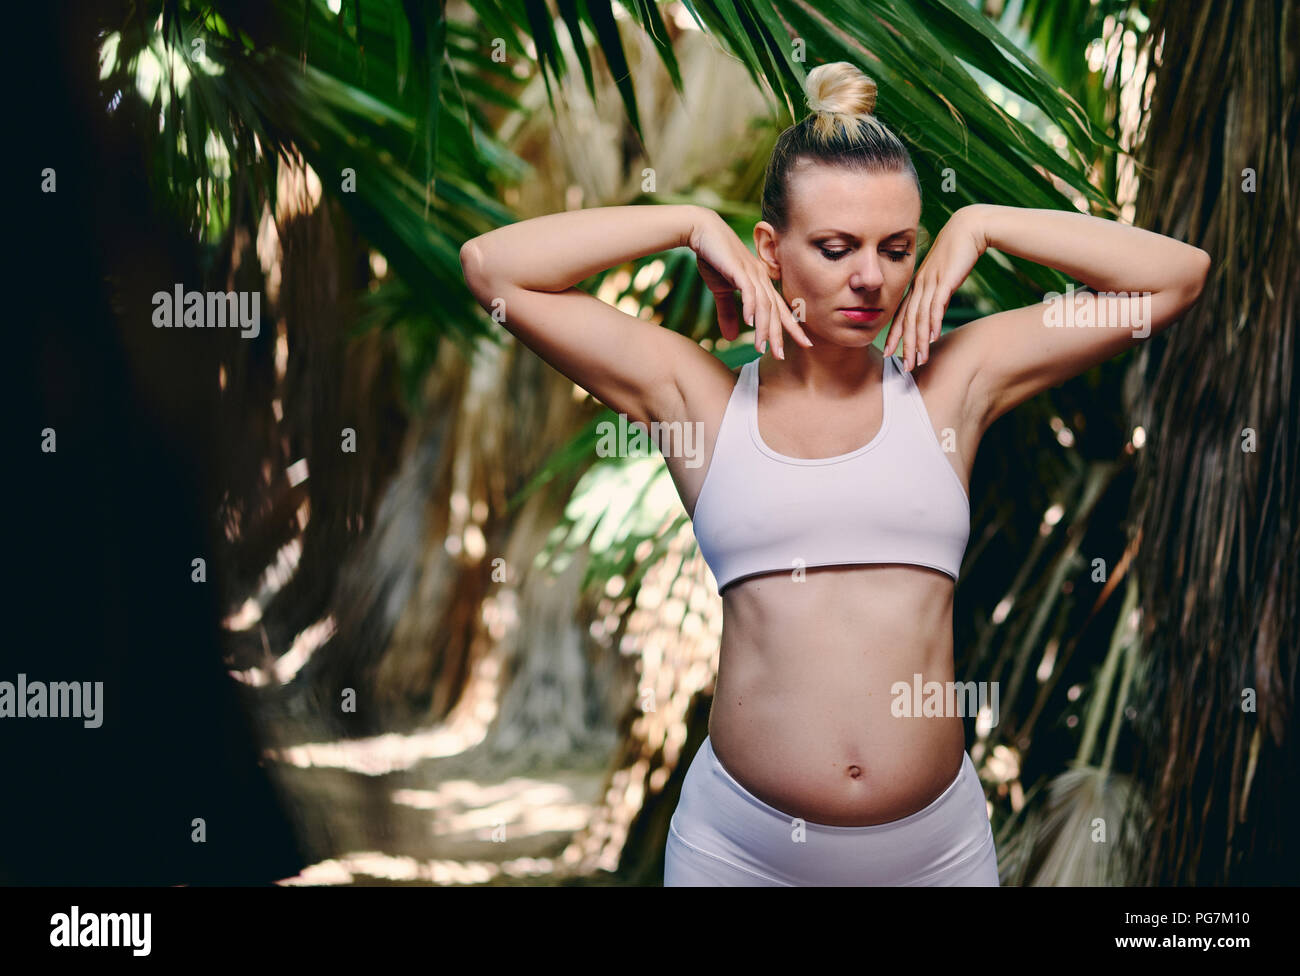 Young attractive blonde woman in white sportswear faisant du yoga pilates exercices de fitness dans la nature tropicale. Avant la naissance de l'exercice, mode de vie sain, rec Banque D'Images